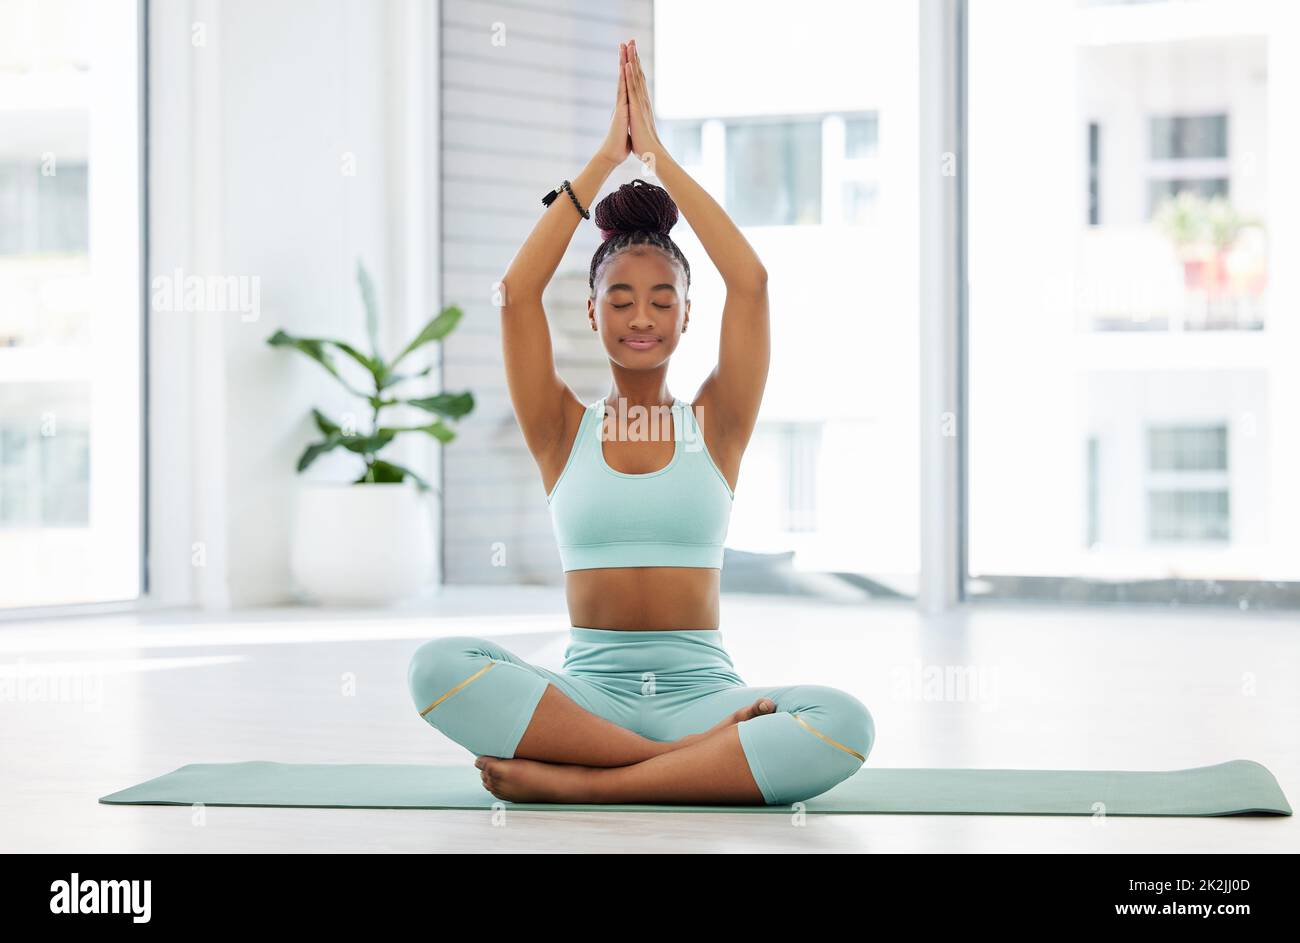 Eins werden mit dem Universum. In voller Länge eine attraktive junge Frau, die allein mit gekreuzten Beinen sitzt und im Studio Yoga praktiziert. Stockfoto